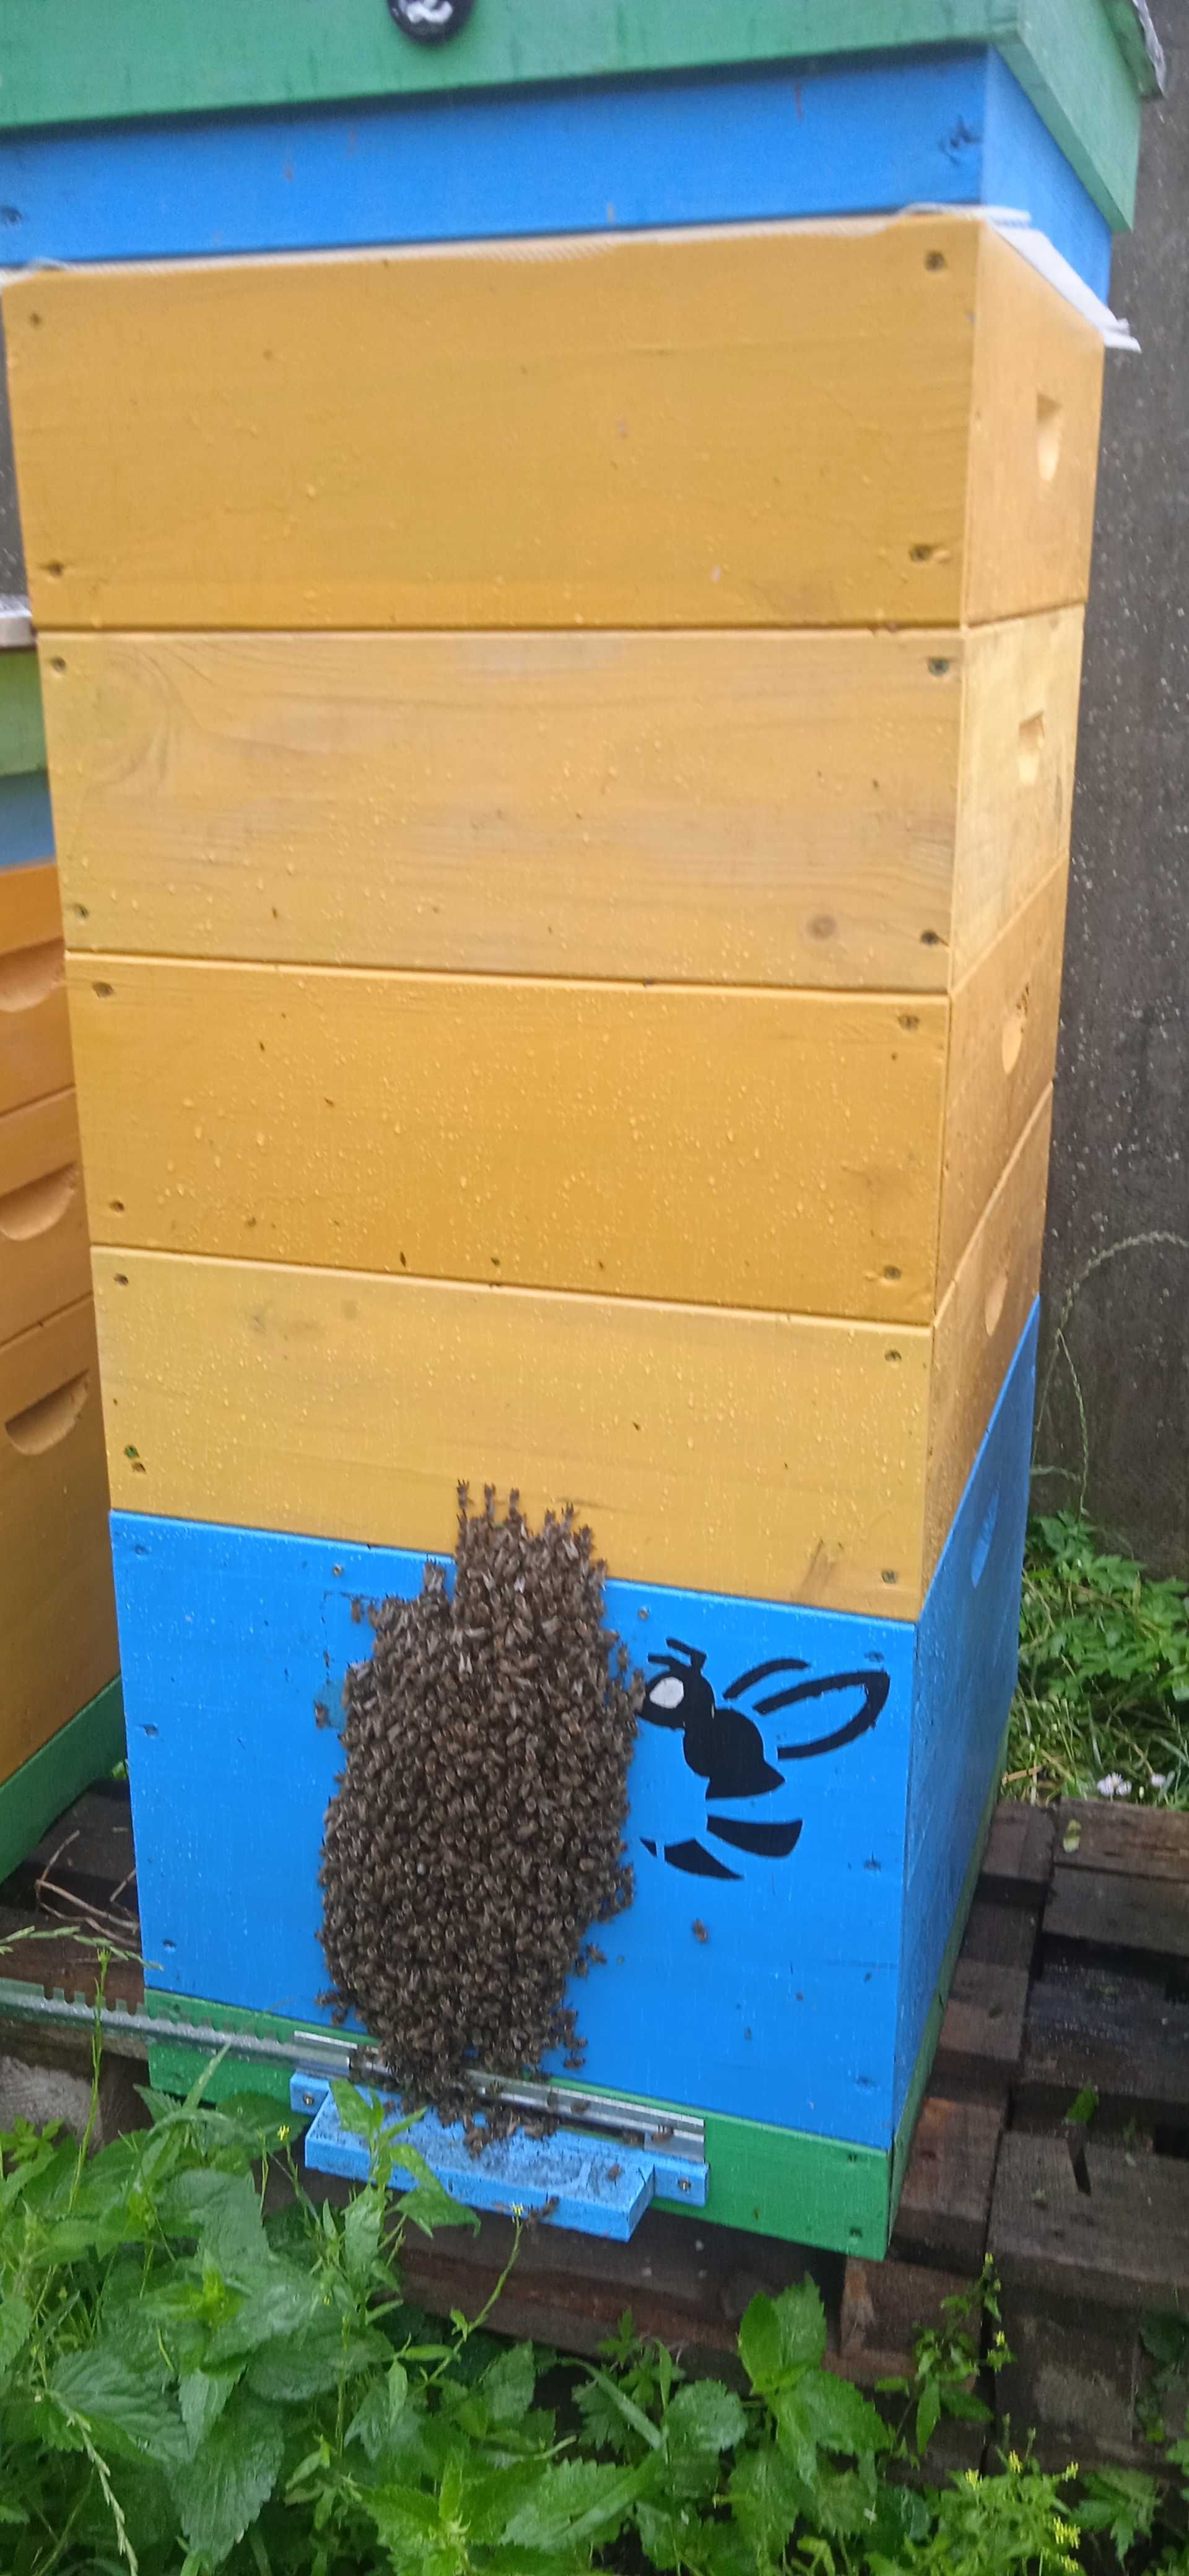 Бджолопакети, бджолосім'ї